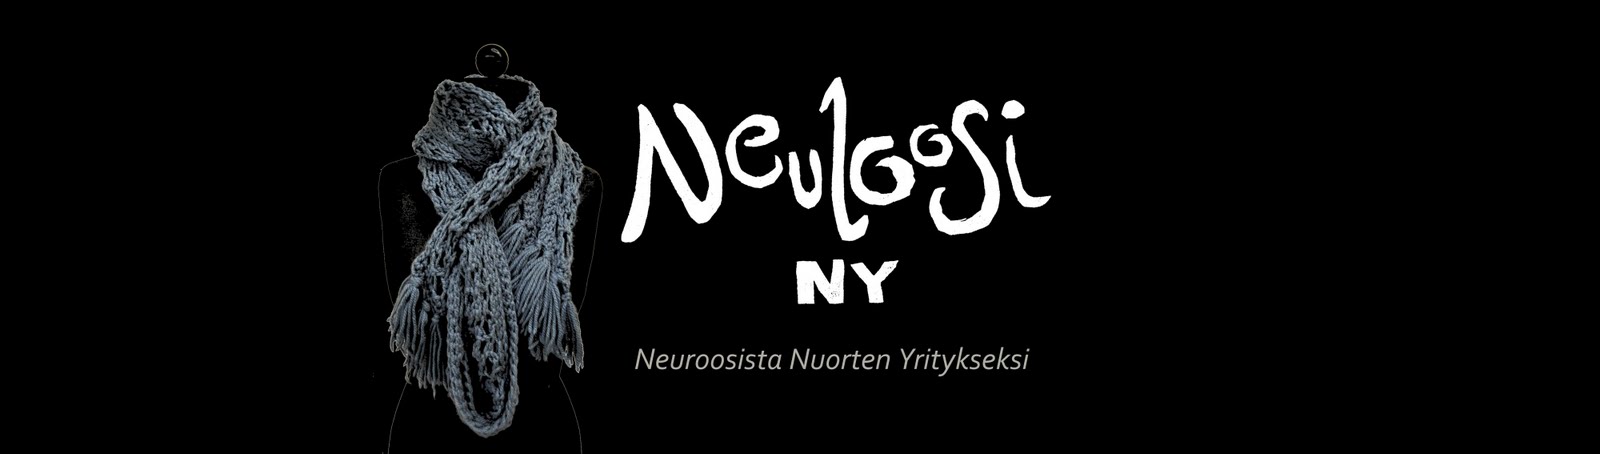 Neuloosi NY